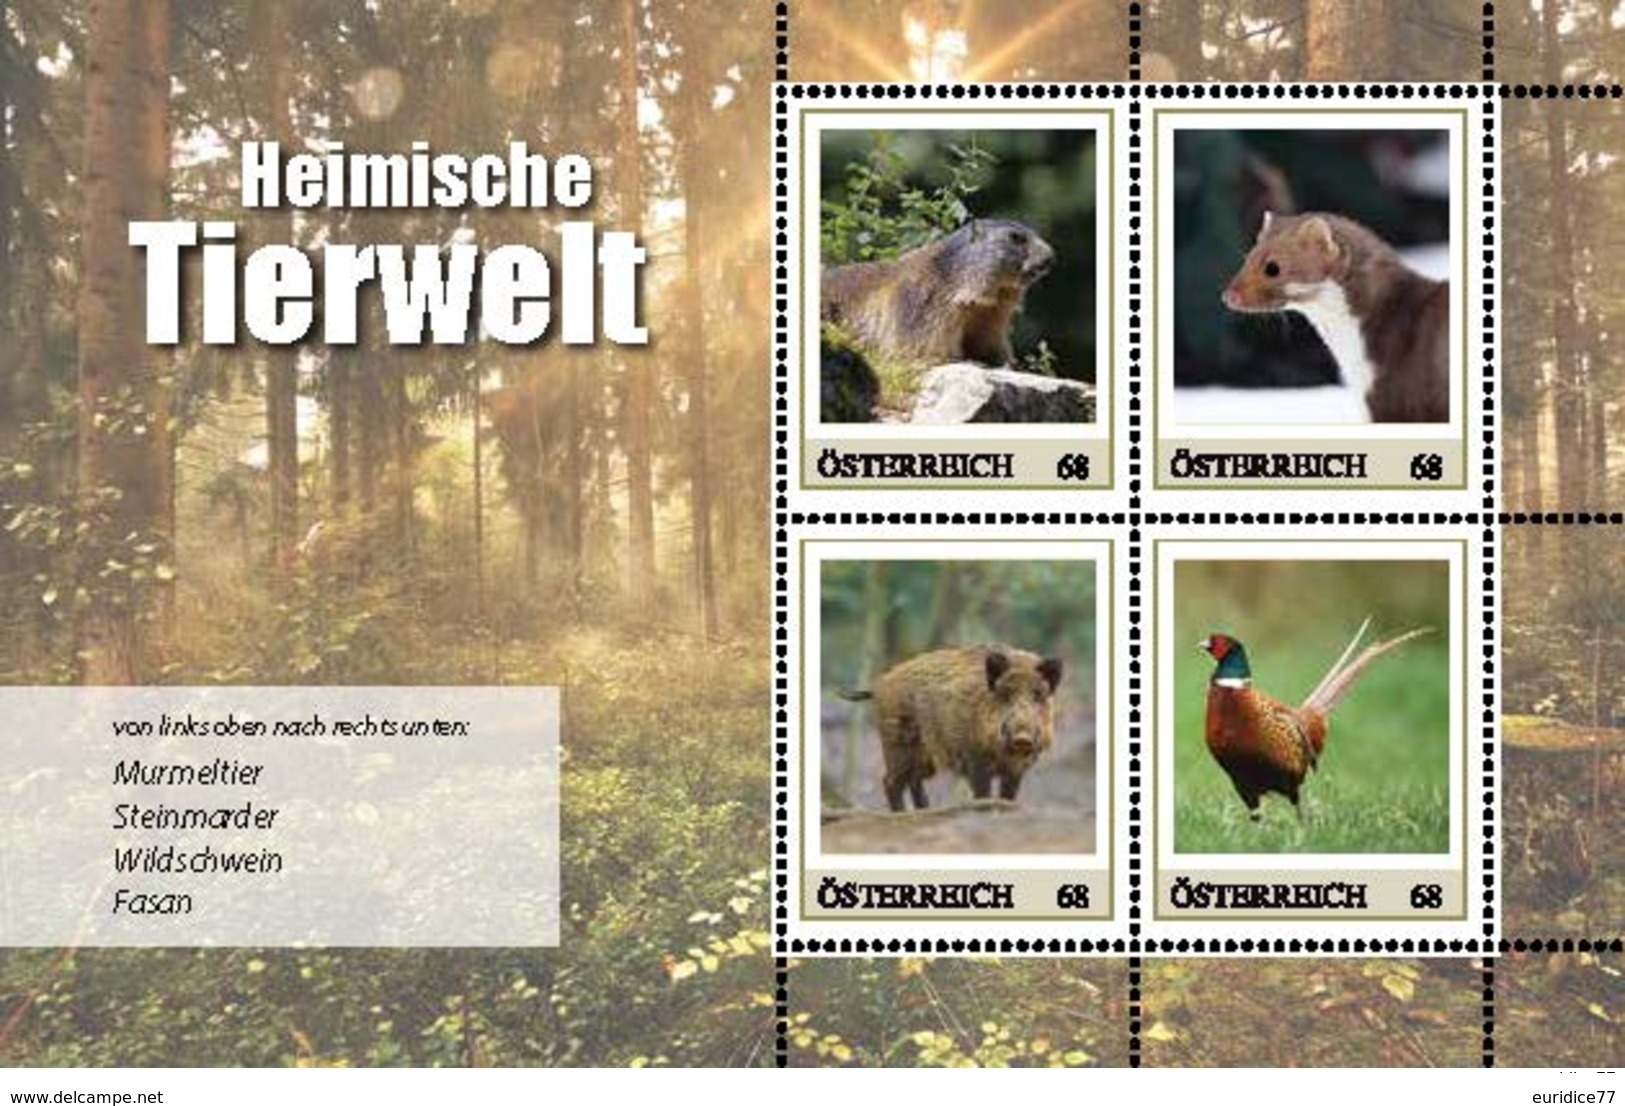 Austria 2017 - Serie Heimische Tierwelt 2 (Marken Edition) - Blocs & Hojas